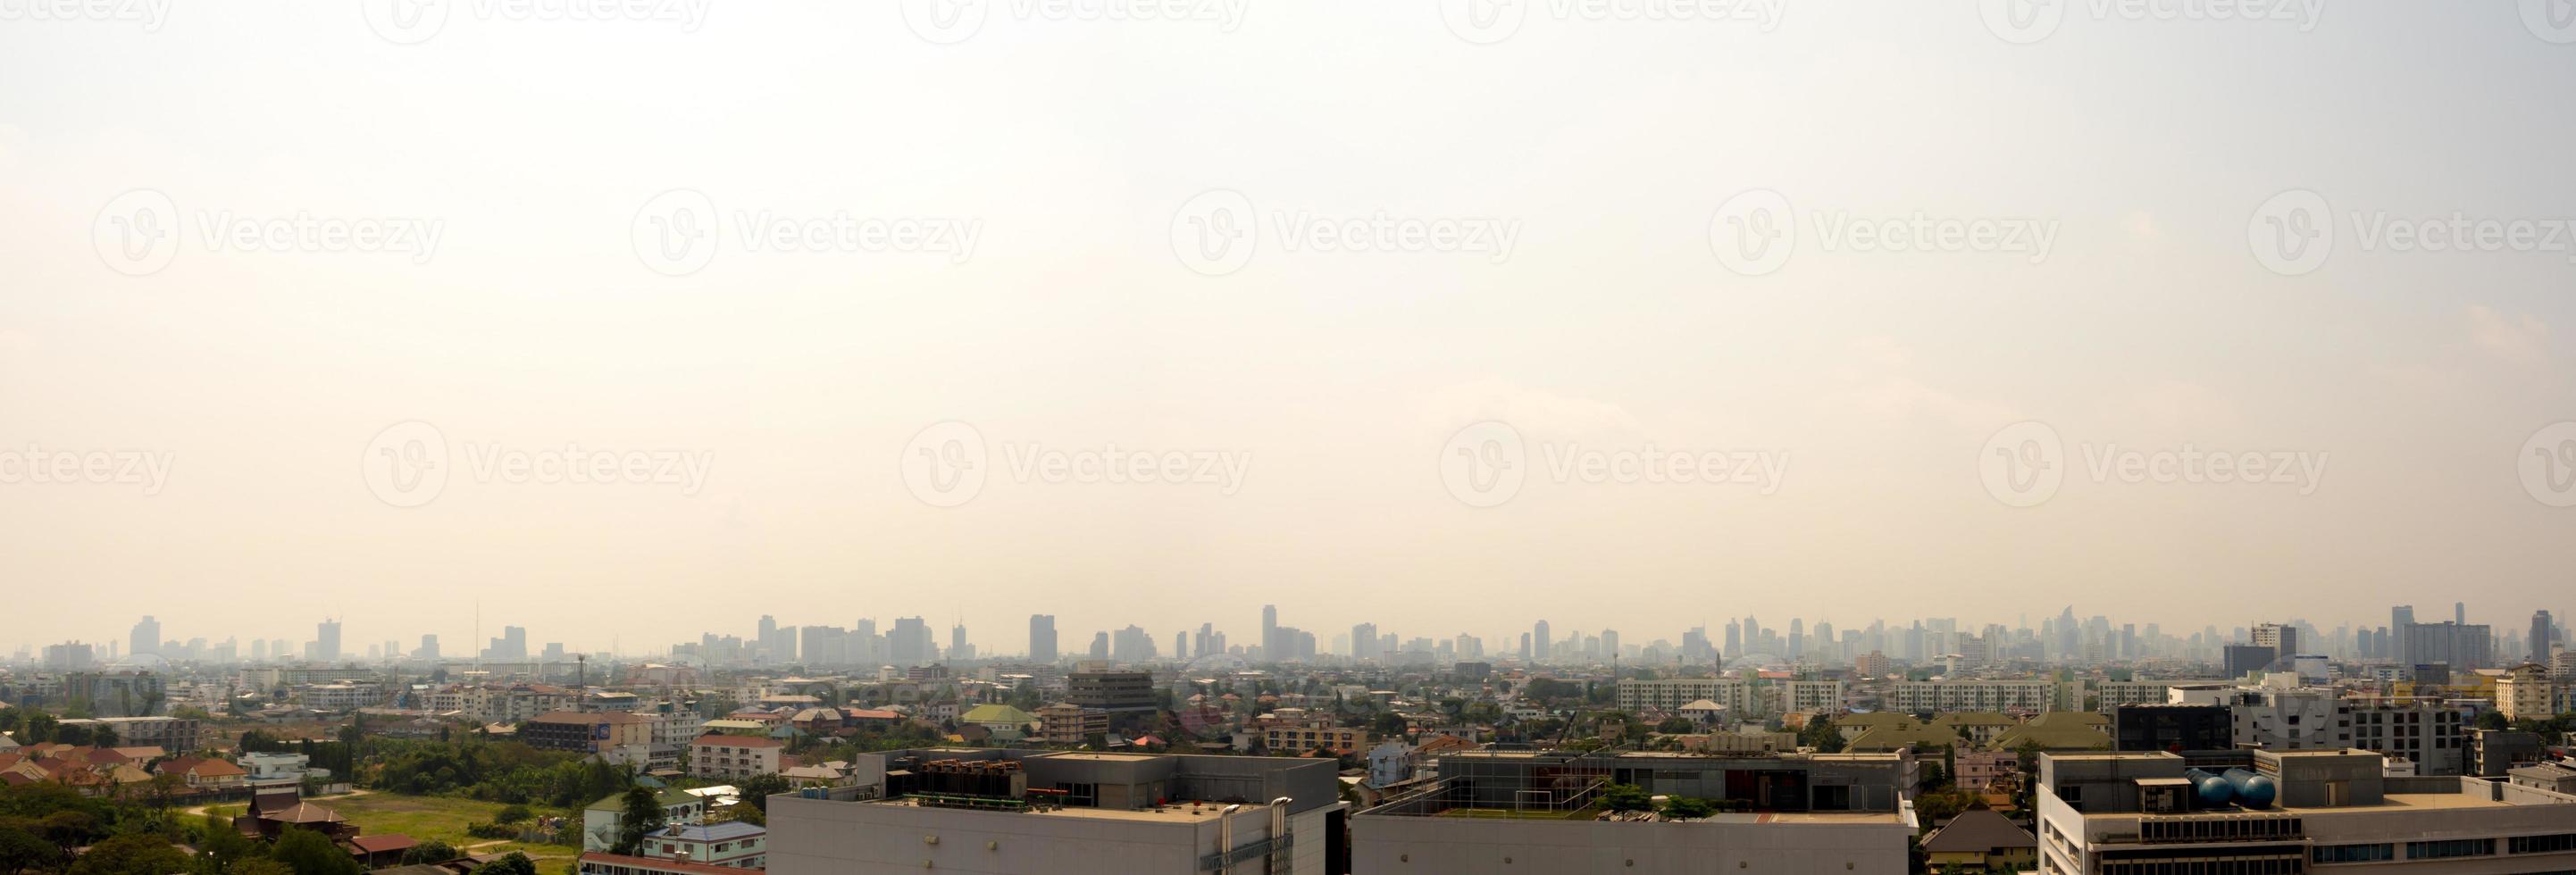 horizonte urbano del paisaje urbano en la niebla o el smog. imagen de vista amplia y alta de la ciudad de bangkok en el smog foto